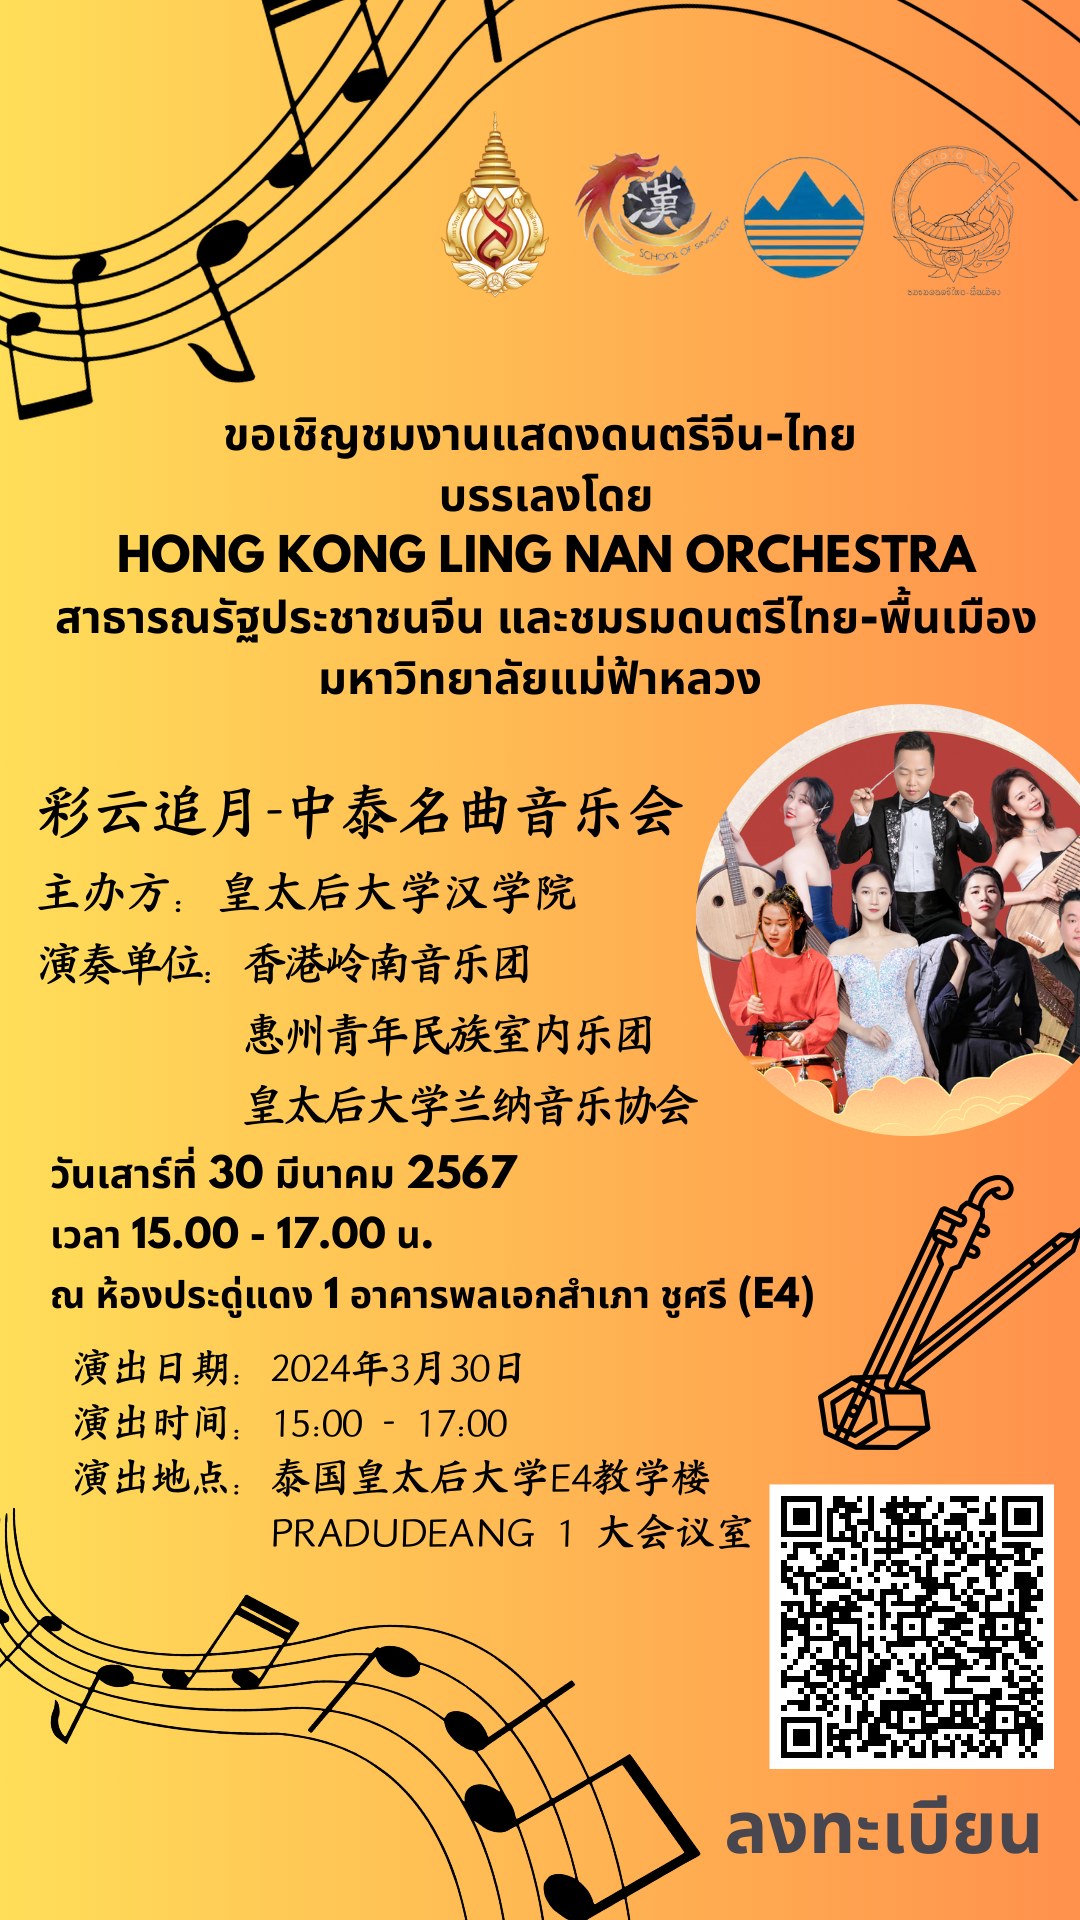 ขอเชิญชมงานแสดงดนตรีจีน-ไทย บรรเลงโดย Hong Kong Ling Nan Orchestra สาธารณรัฐประชาชนจีน และชมรมดนตรีไทย-พื้นเมือง มหาวิทยาลัยแม่ฟ้าหลวง